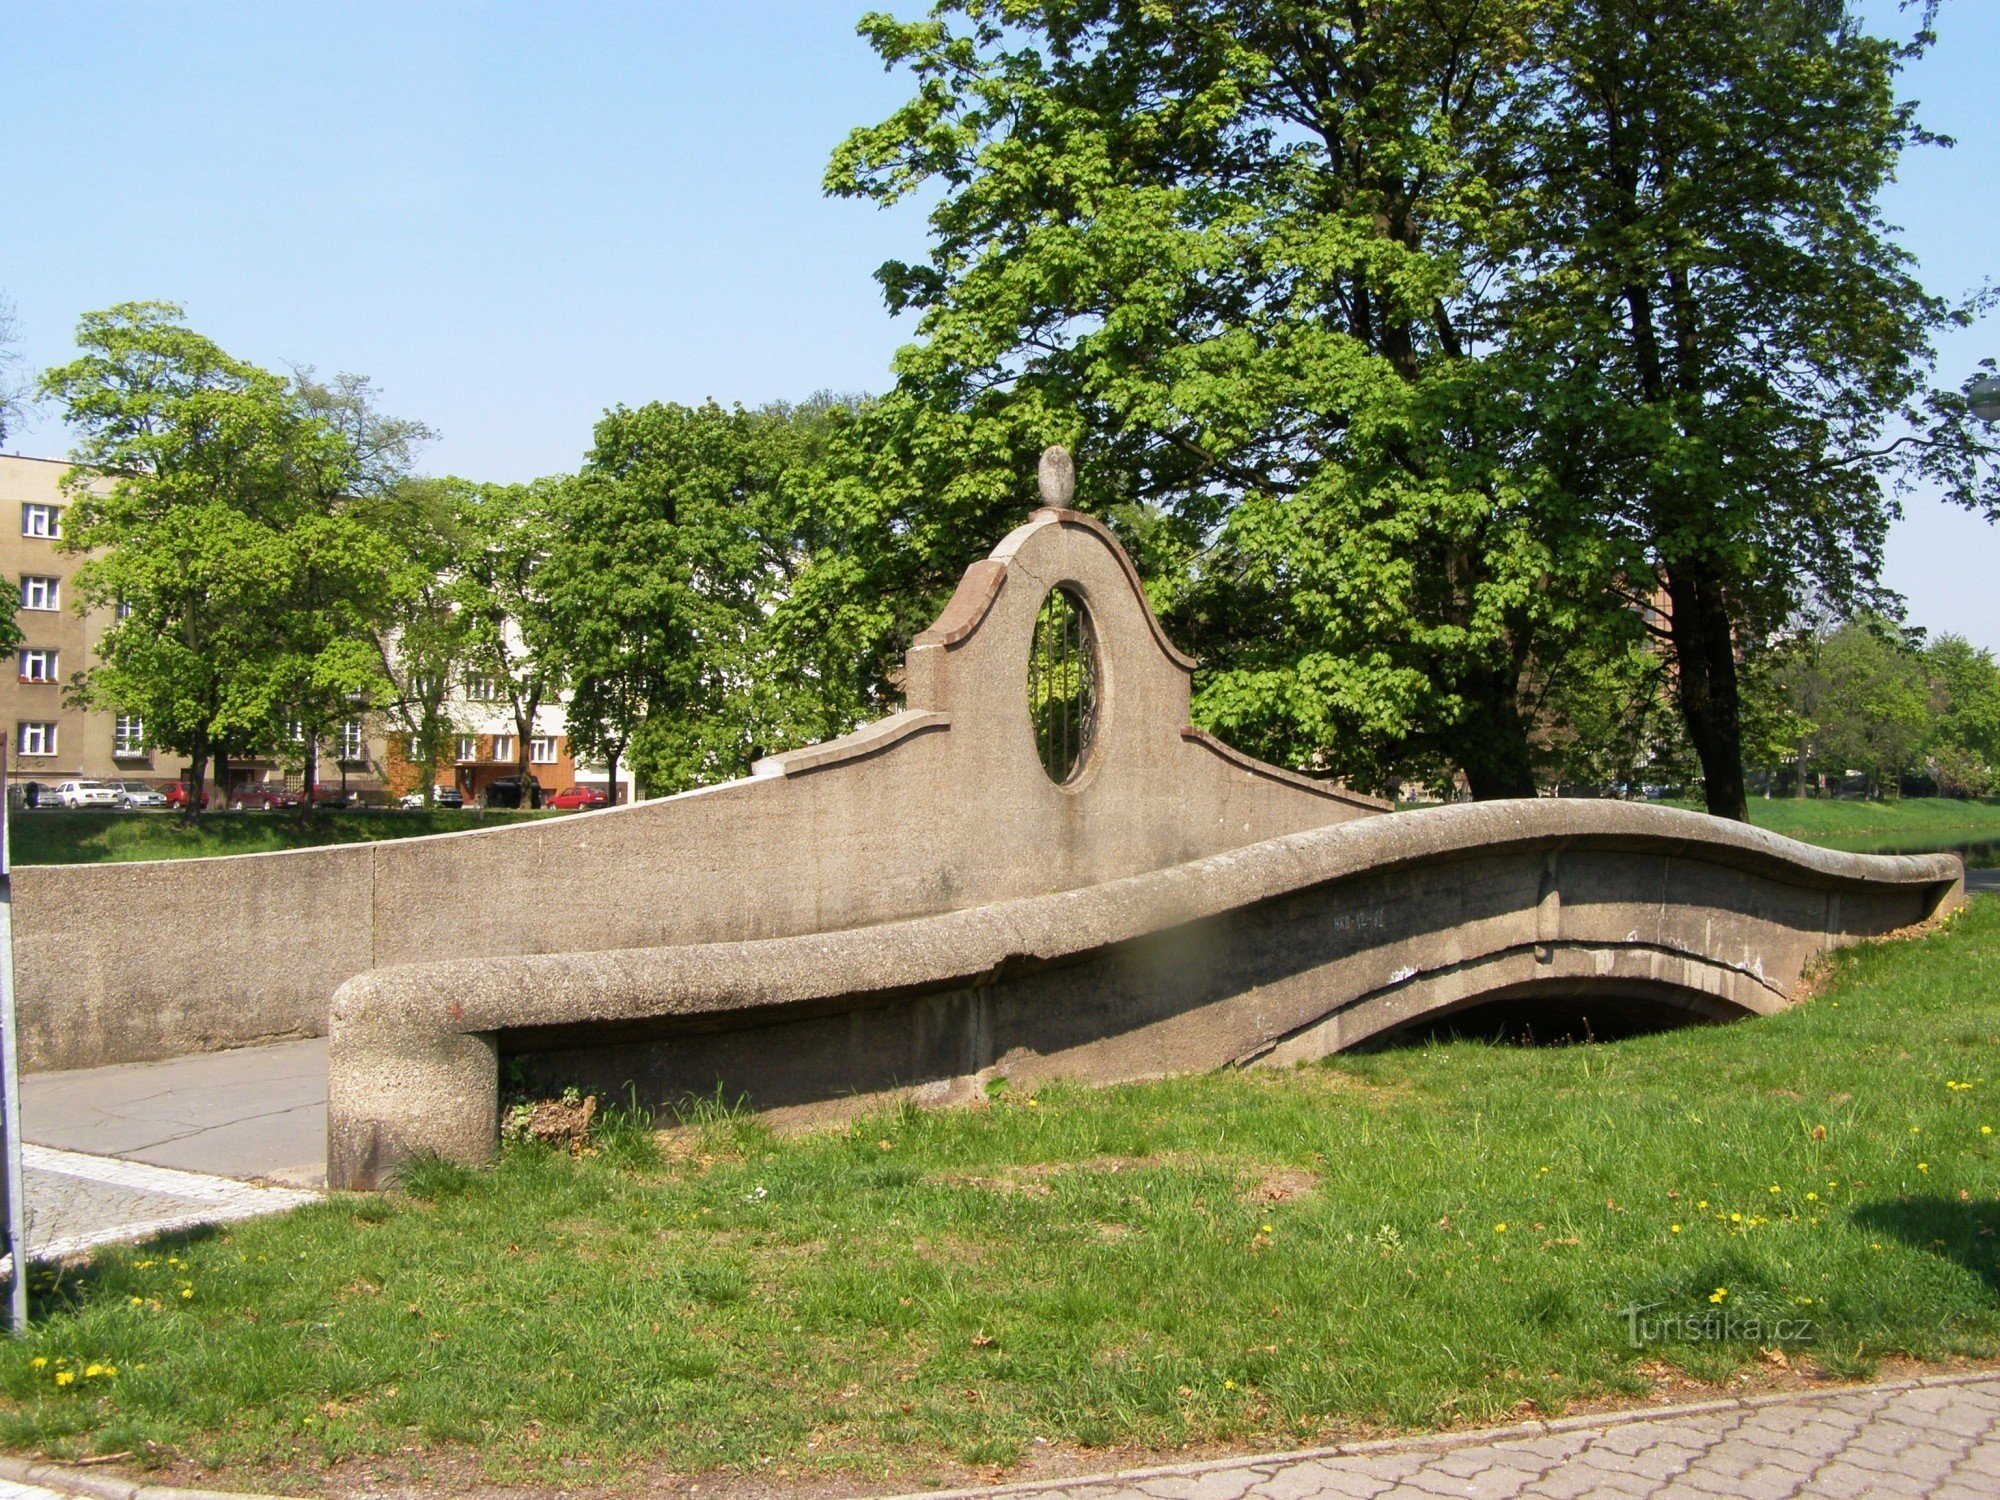 Hradec Králové - bron över Piletický-strömmen